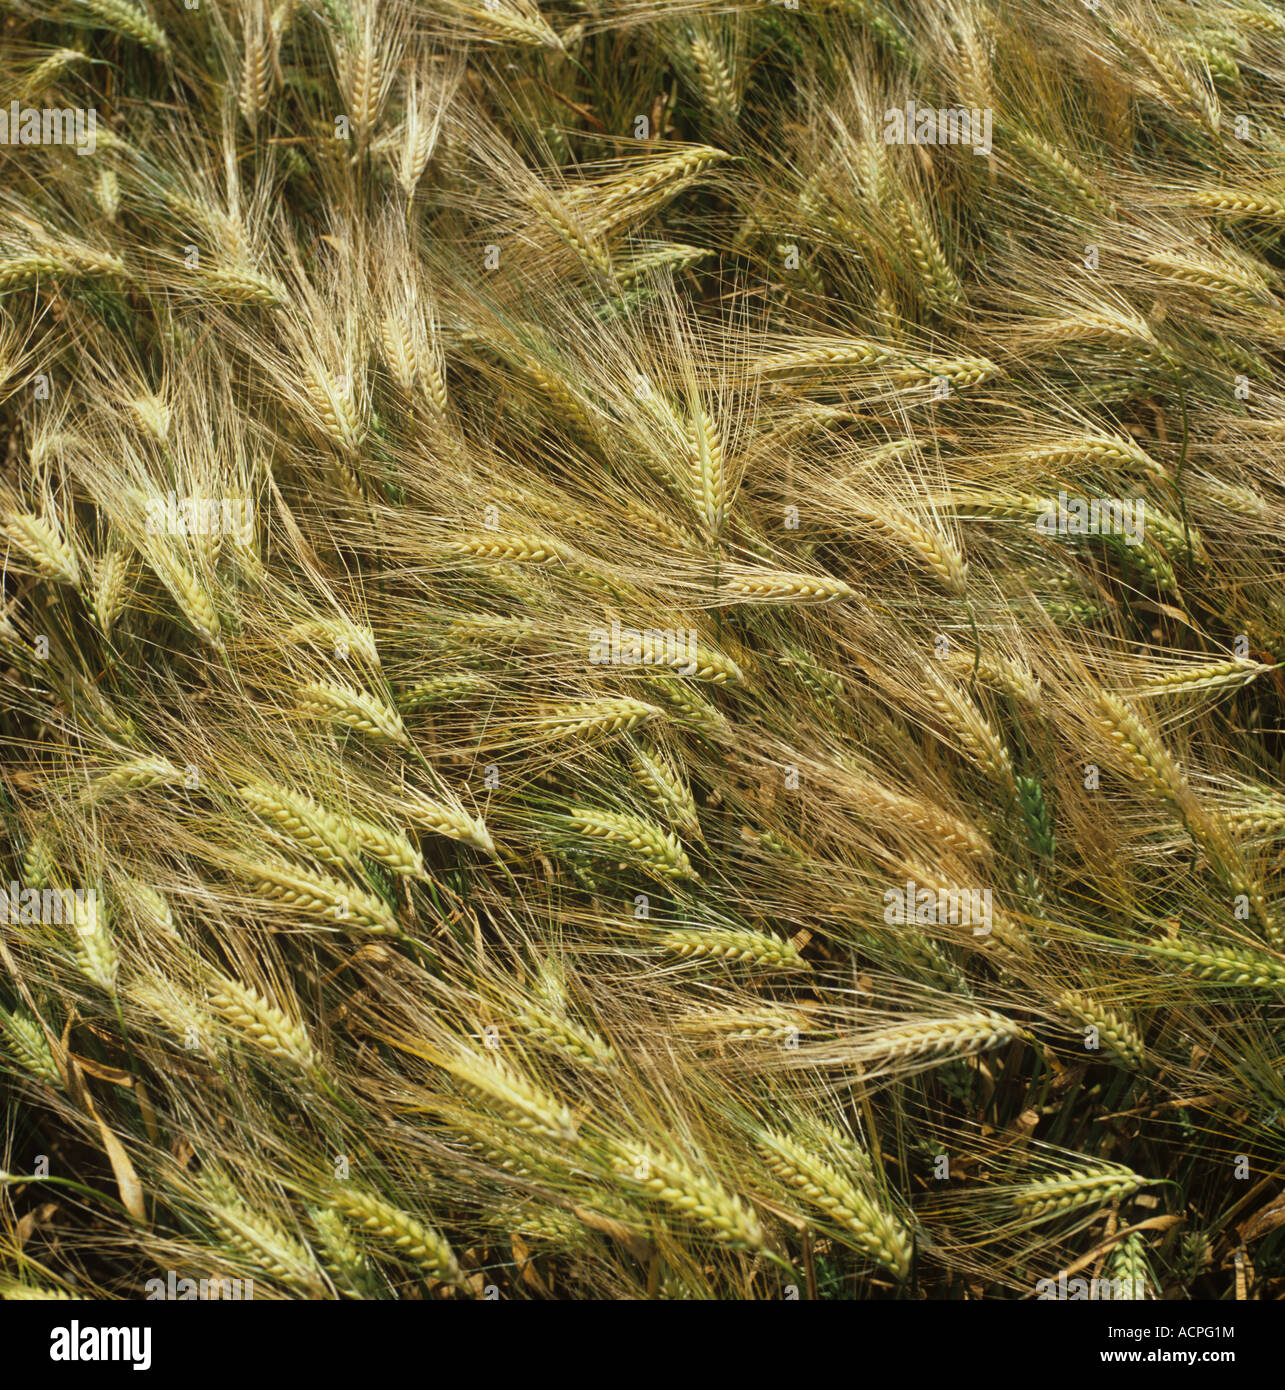 Orejas de maduración de la cosecha de cebada de seis hileras Foto de stock